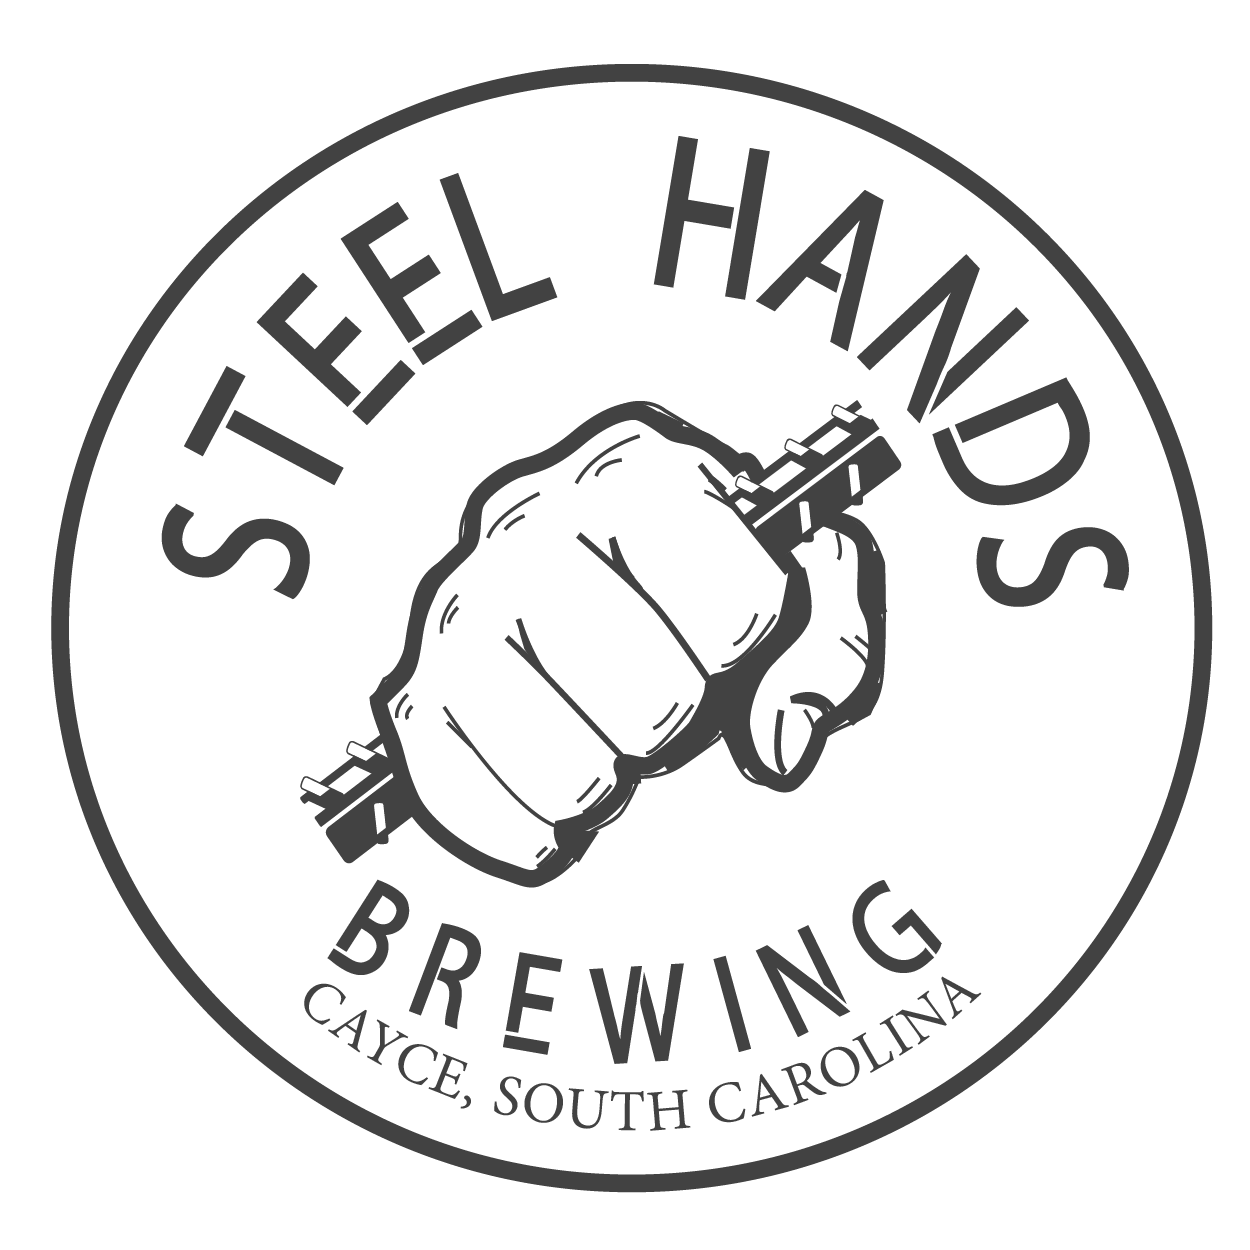 Steel Hands Brewing